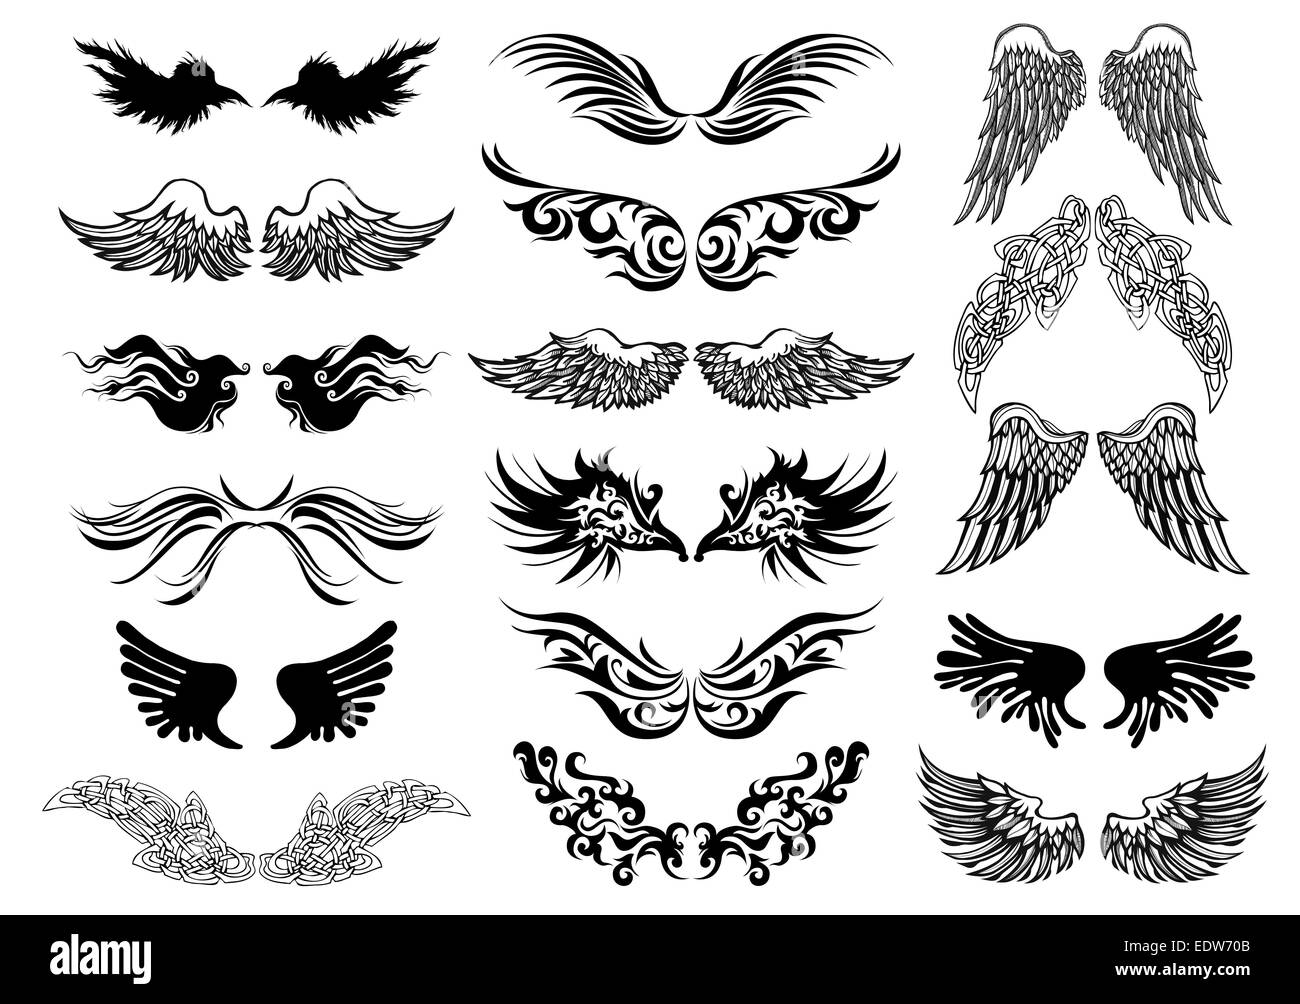 Tatouage ailes vector set Banque D'Images